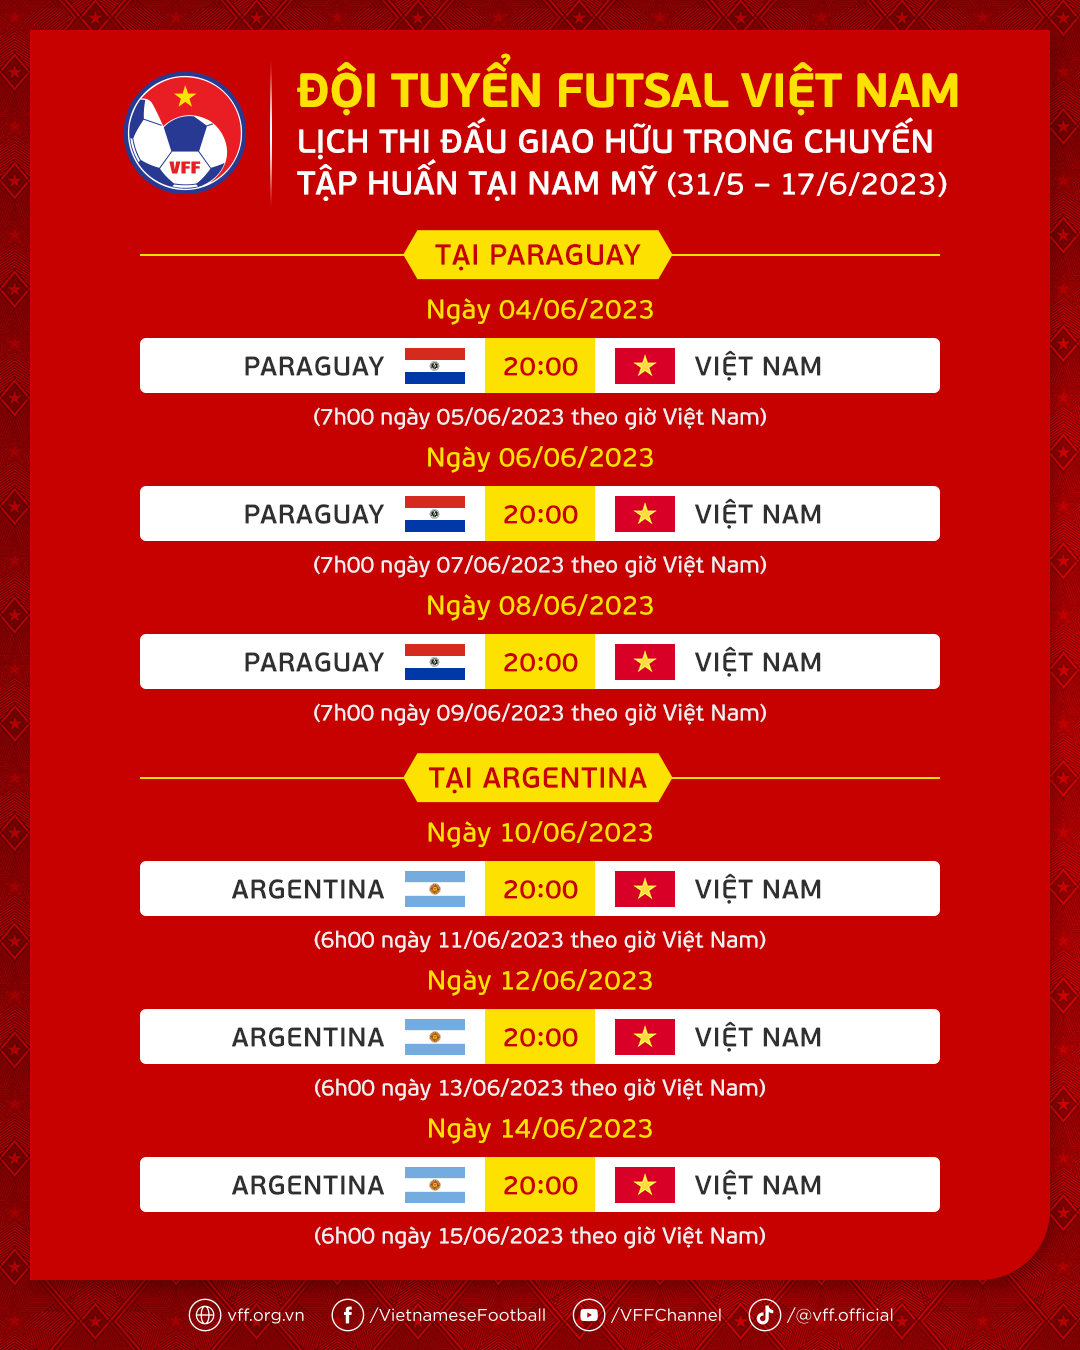 Lịch thi đấu giao hữu của tuyển futsal Việt Nam tại Nam Mỹ. Ảnh: VFF